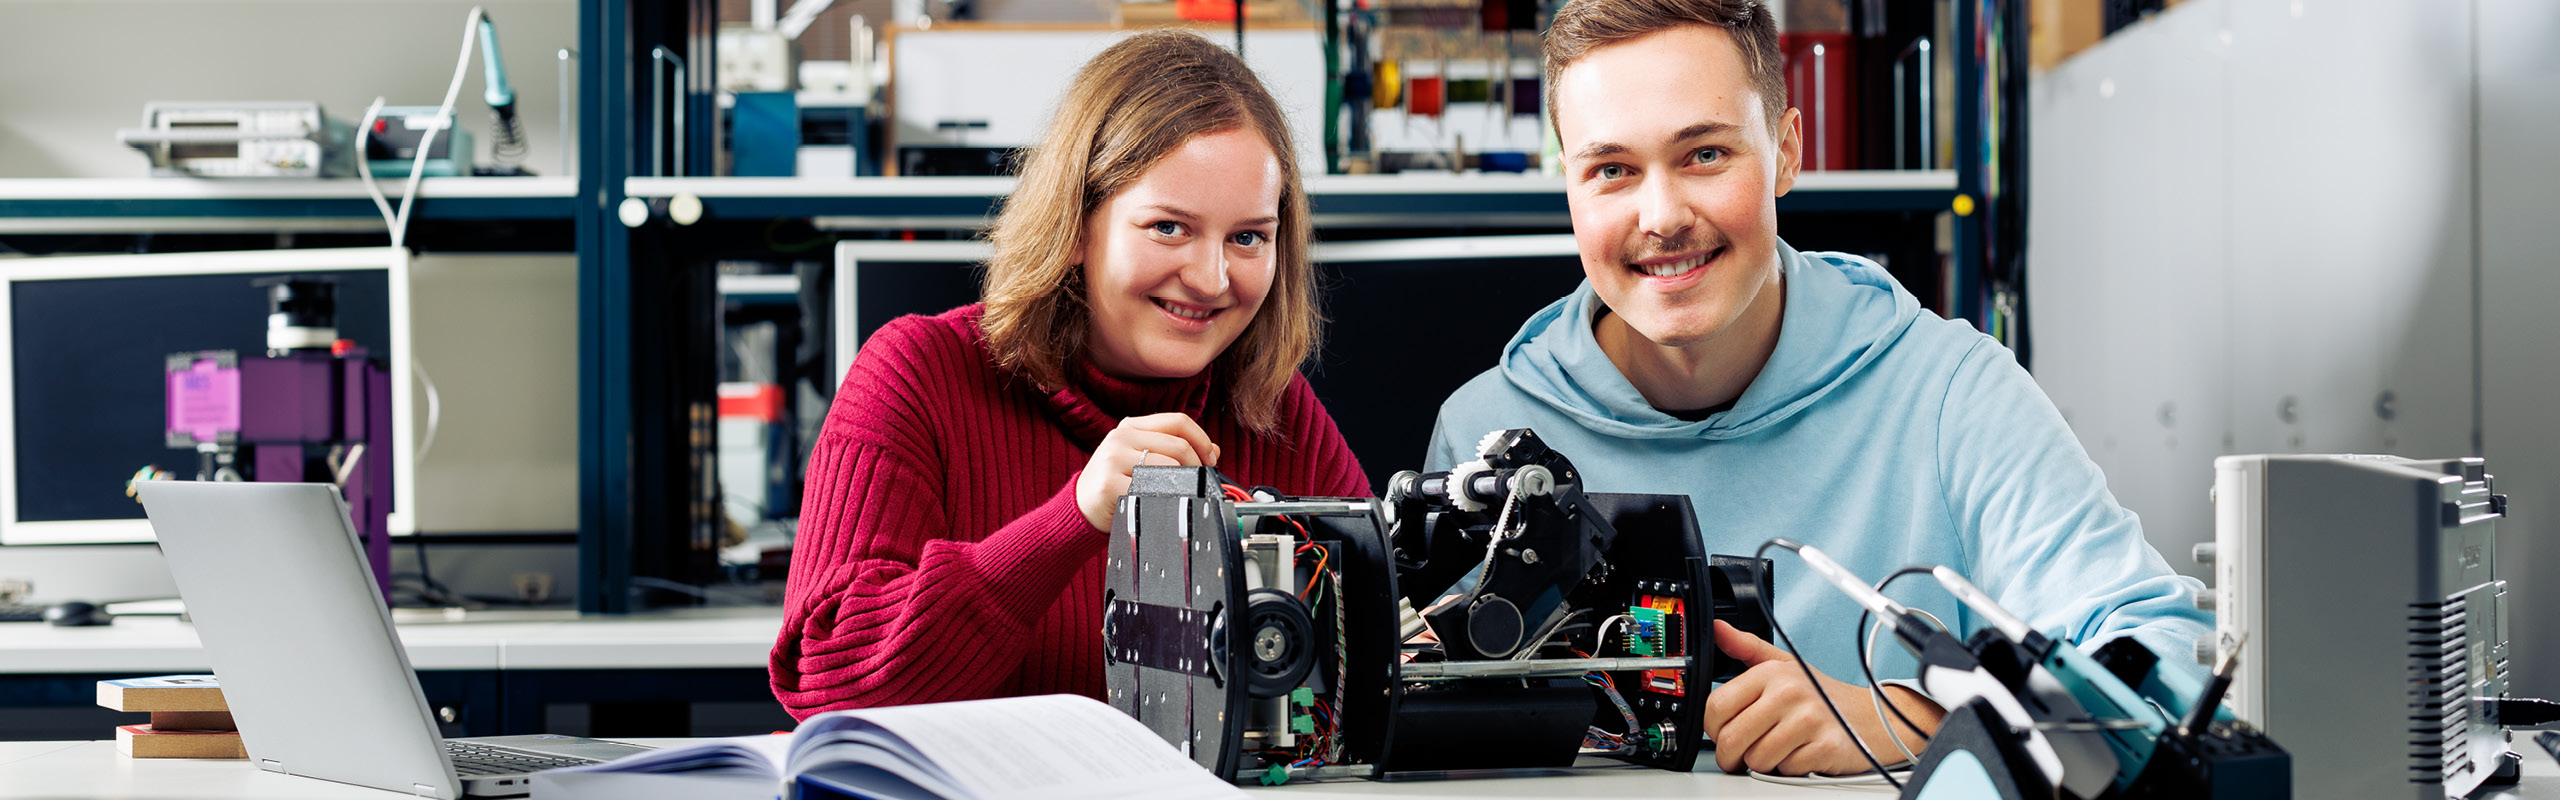 Zwei Bachelorstudierende beschäftigen sich im Labor mit Elektrotechnik.